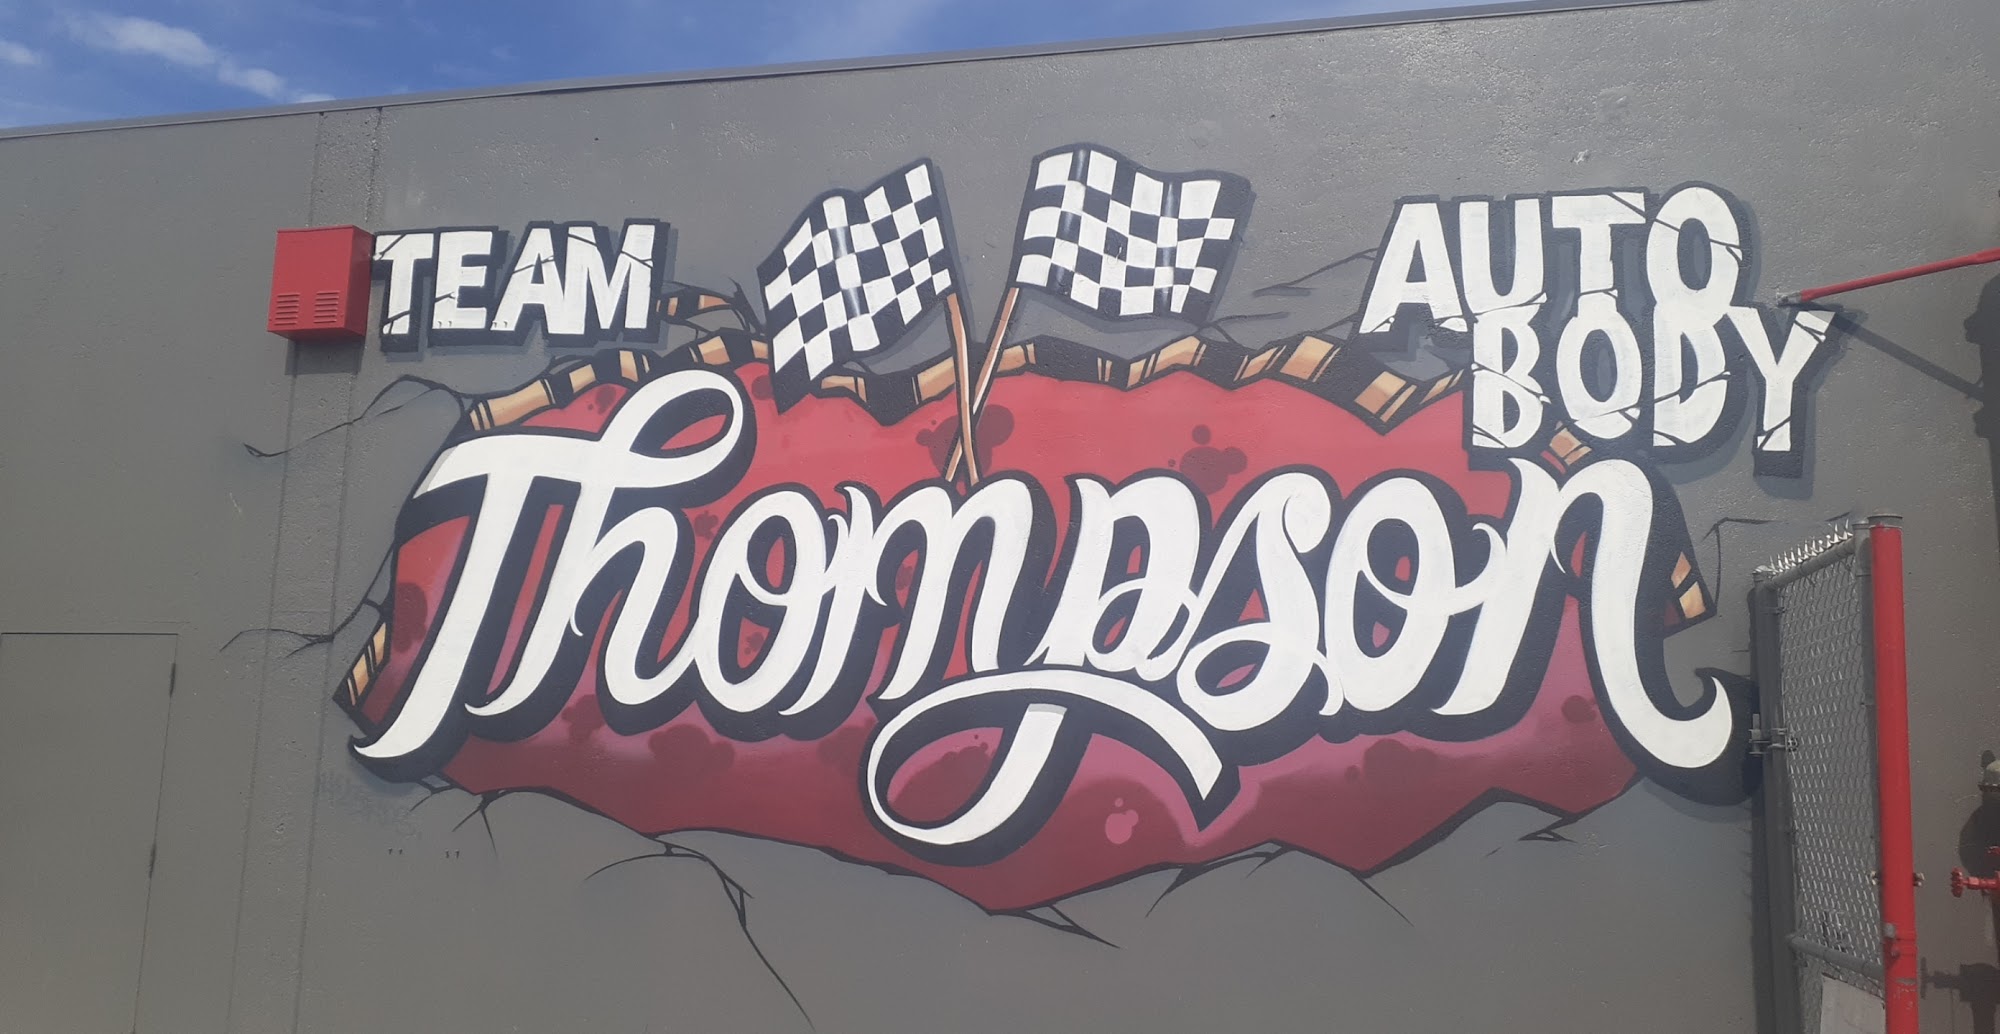 Team Thompson Auto Body